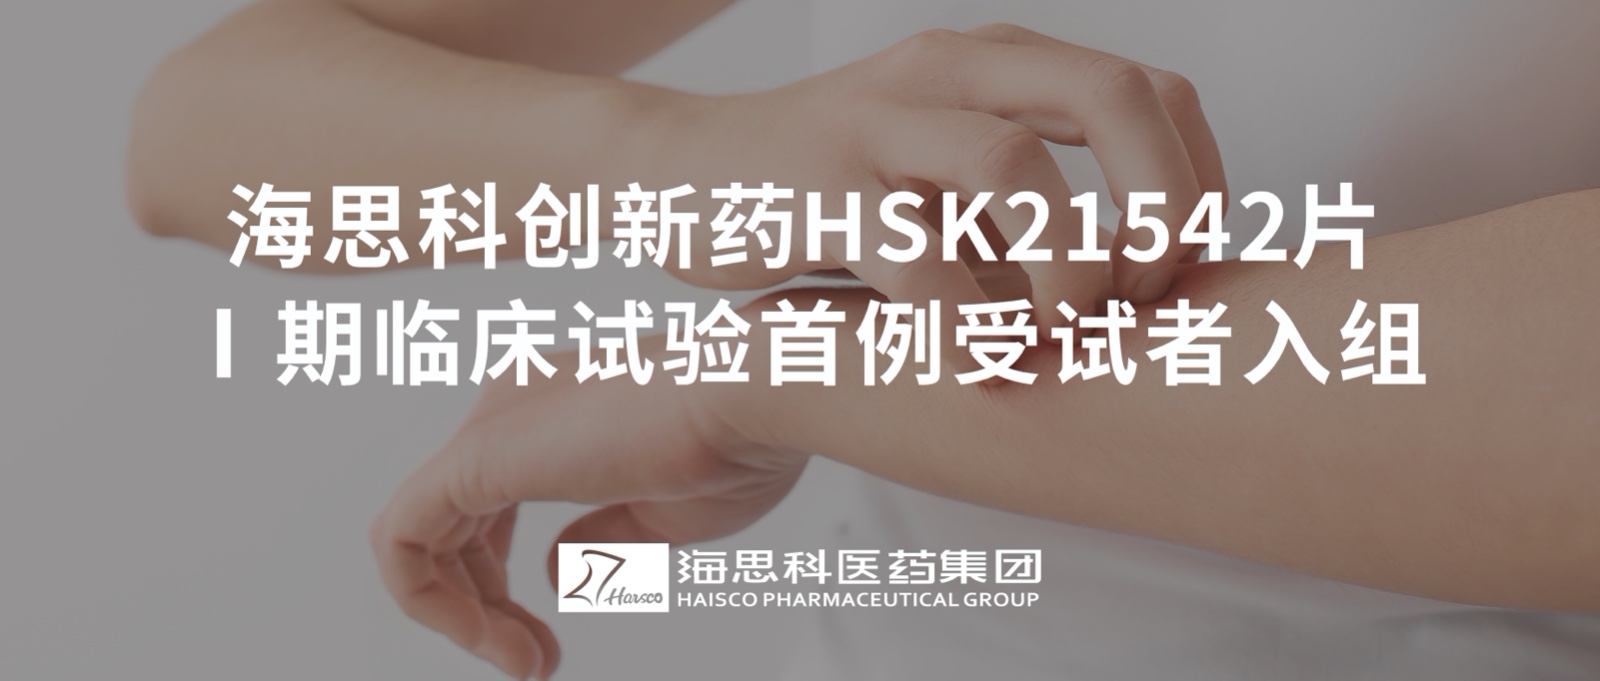 AG电投厅创新药HSK21542片Ⅰ期临床试验首例受试者入组